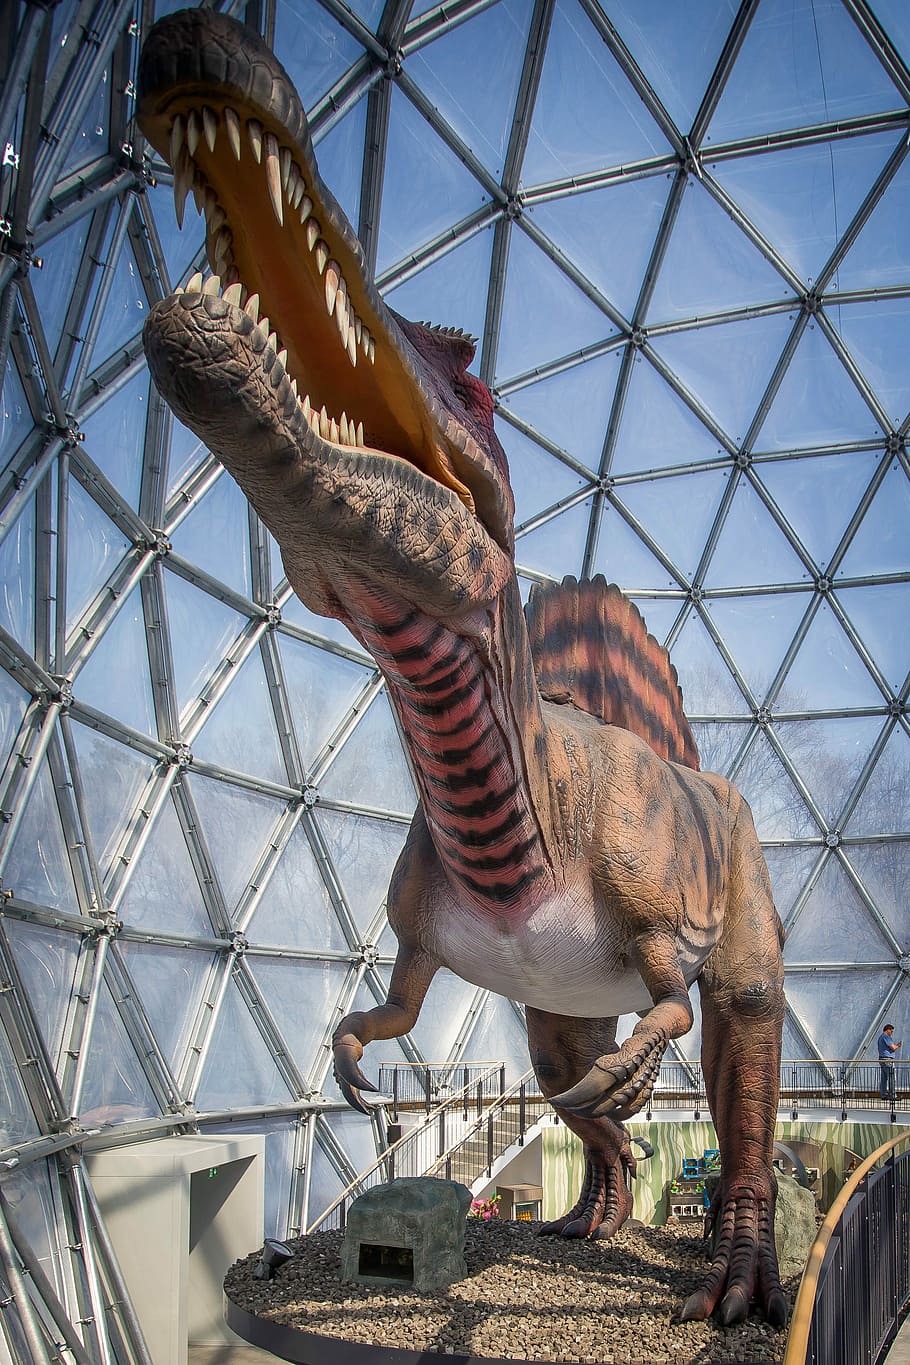 ジャイアント トカゲ 恐竜 爬虫類 巨大トカゲ 竜脚類 ウルティエ 捕食者 先史時代 肉食動物 Pxfuel